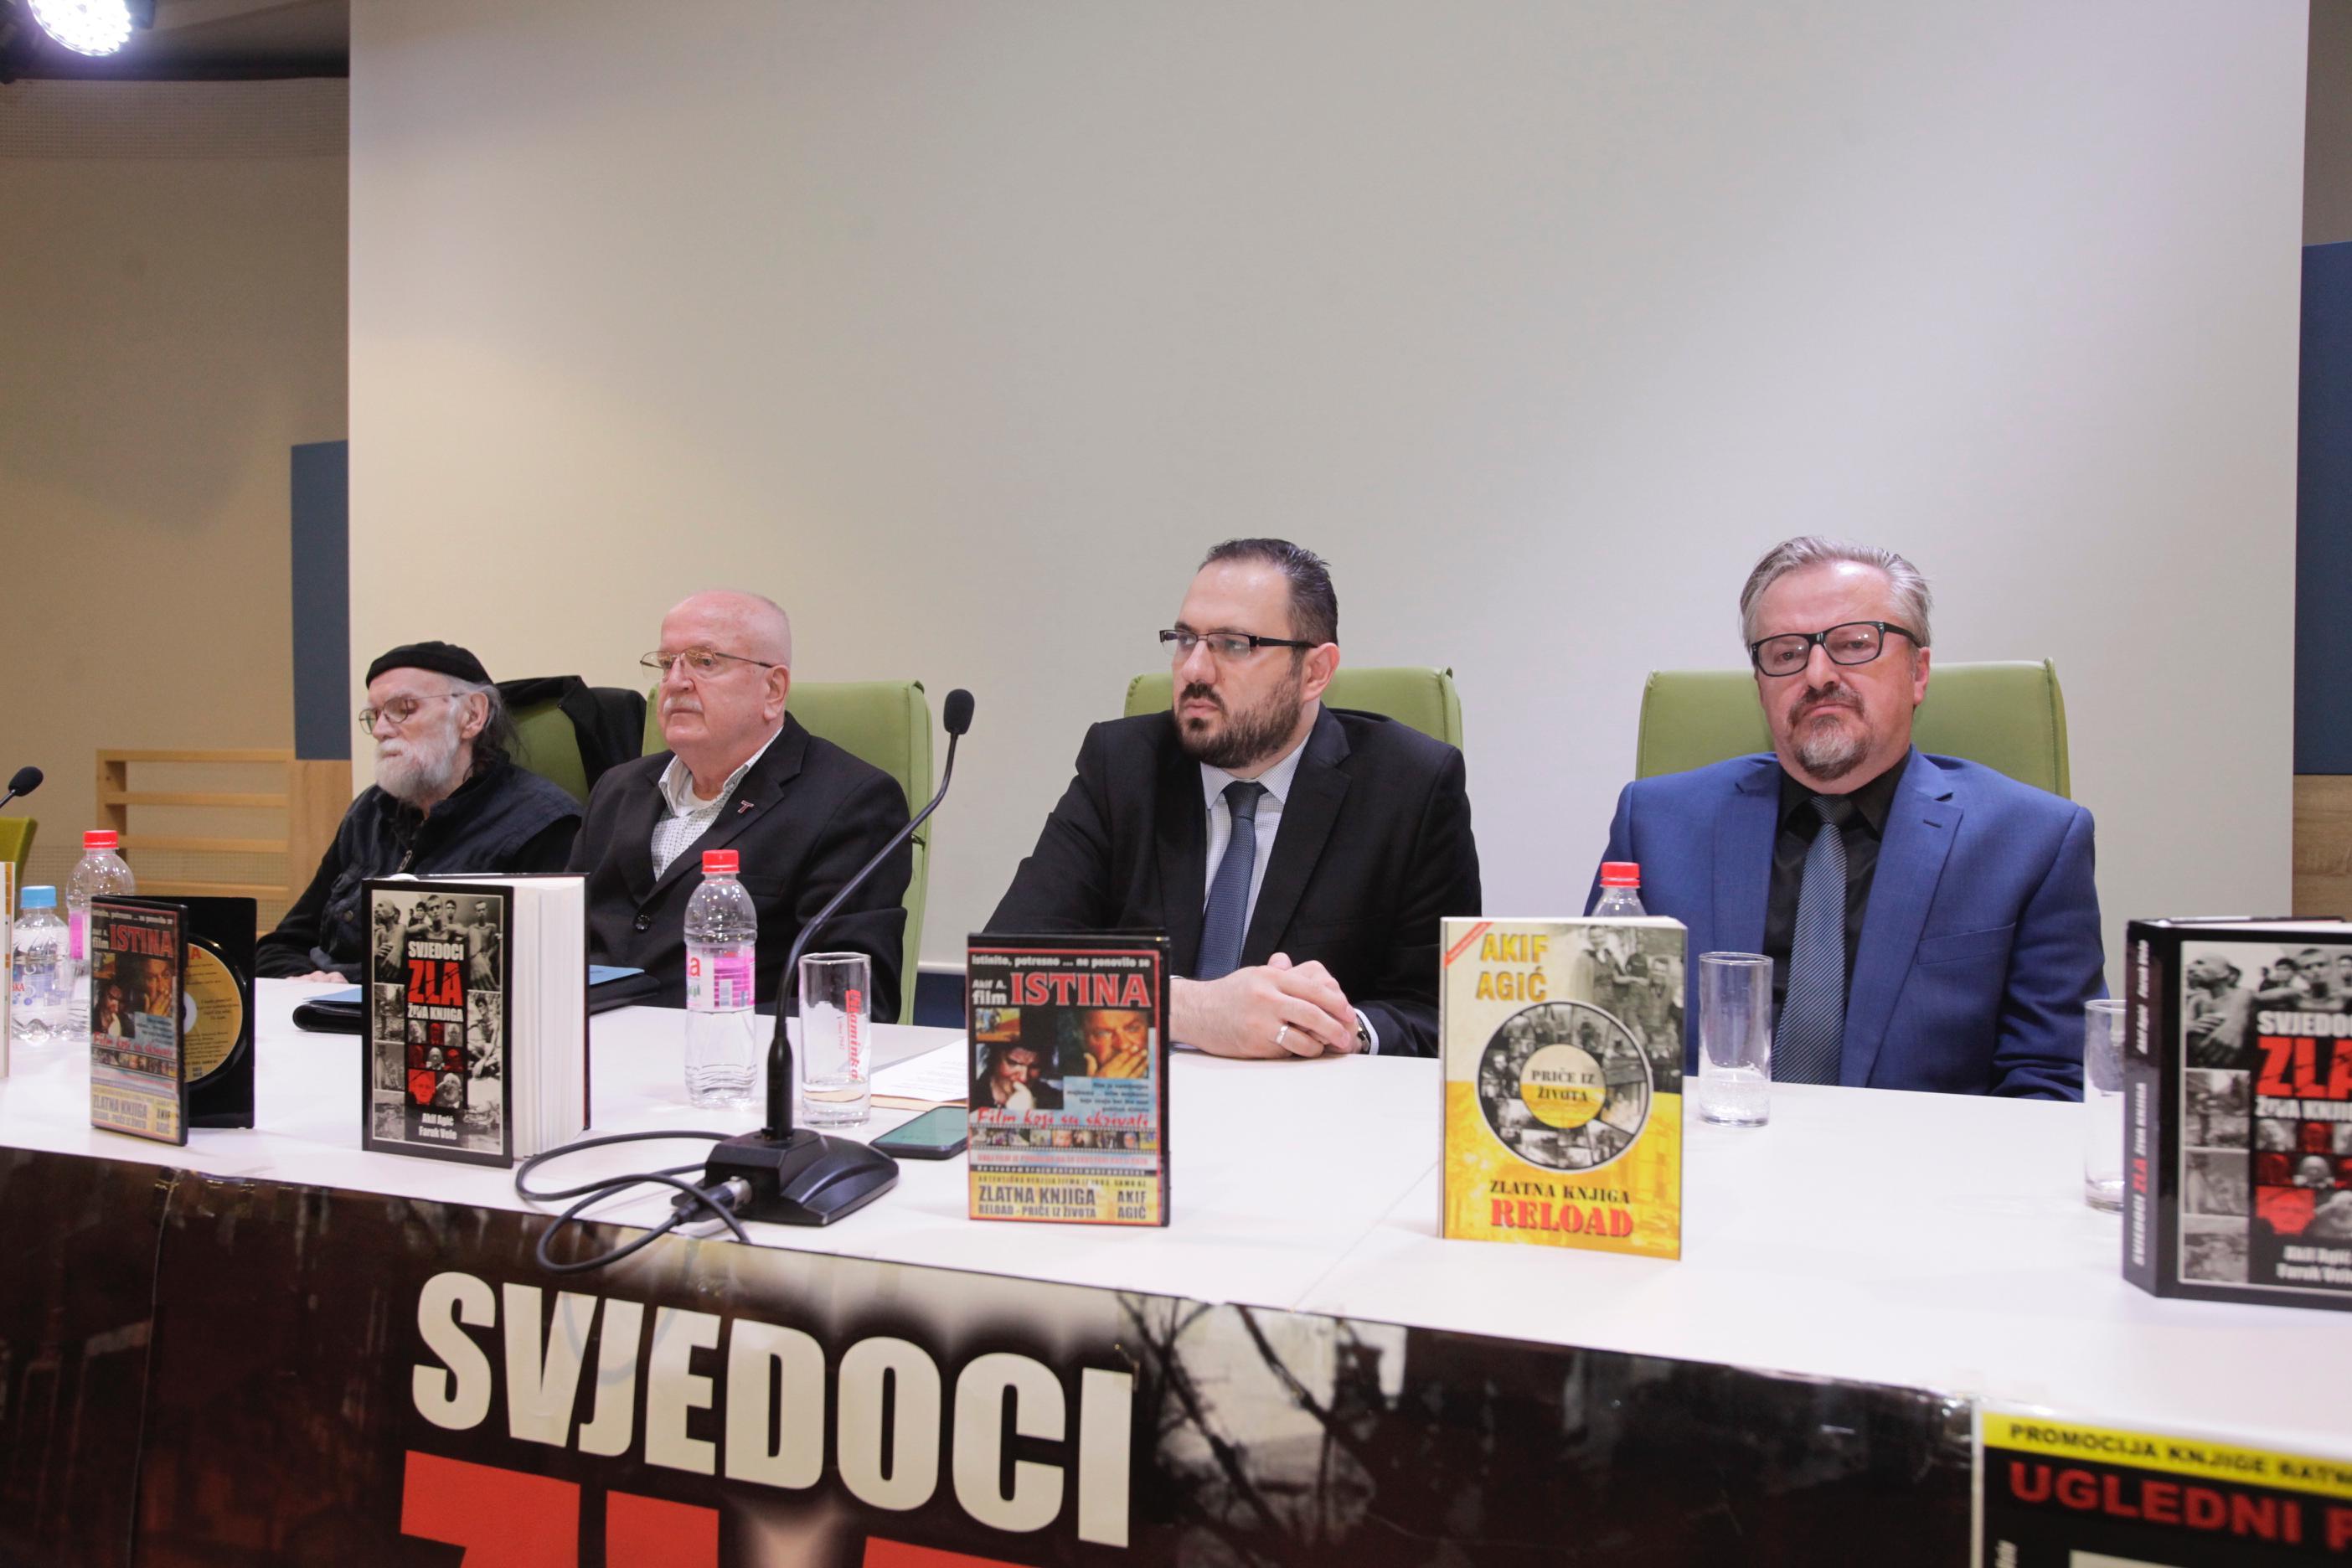 Sa večerašnje promocije u Sarajevu: Brojni čestitali autorima - Avaz